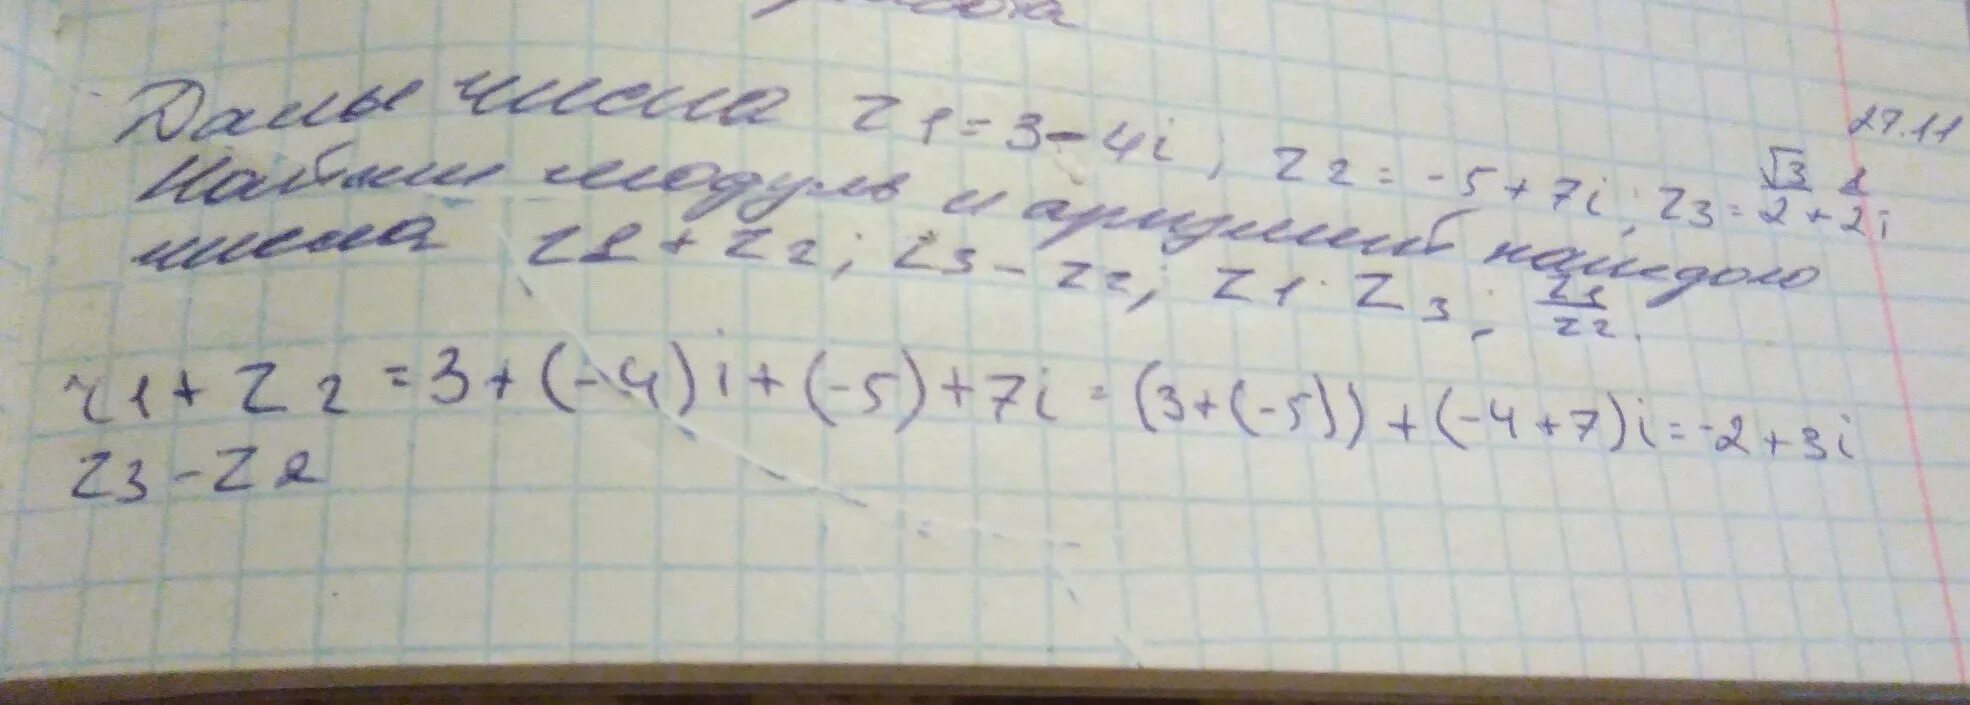 Z 1 2 3i. Модуль z1 z2 модуль z1 модуль z2. Модуль комплексного числа z= 4 + 3i. Z1=4i,z2=2+2.корень 3. Z1 = 5 + 5 i z2 = 1 + корень 3 i.